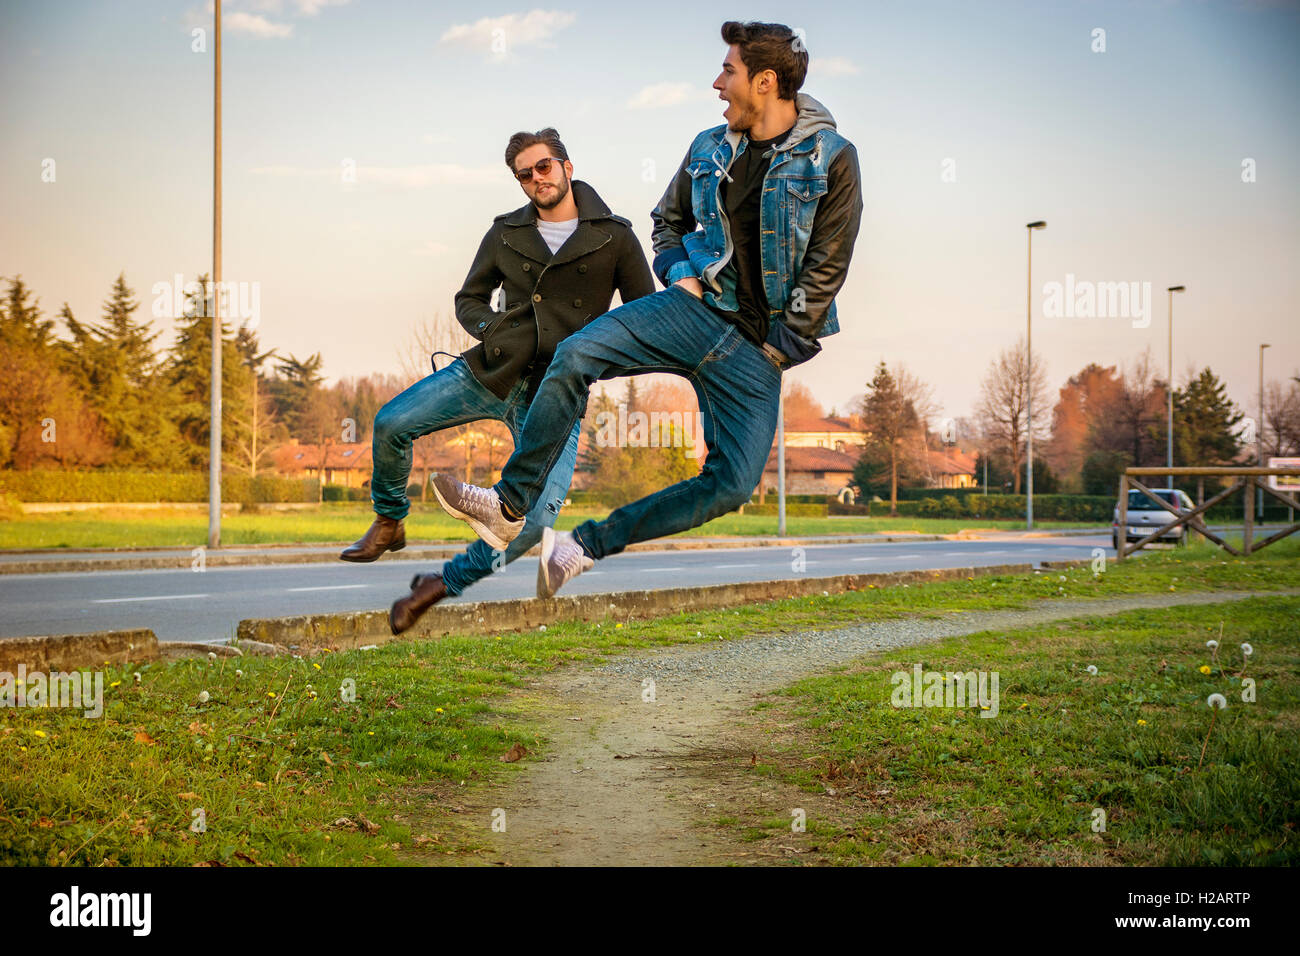 Zwei junge Männer in die Luft springen und klicken Sie auf Fersen zusammen unisono während des Gehens auf Pfad im Stadtpark neben gepflasterten Roa Stockfoto